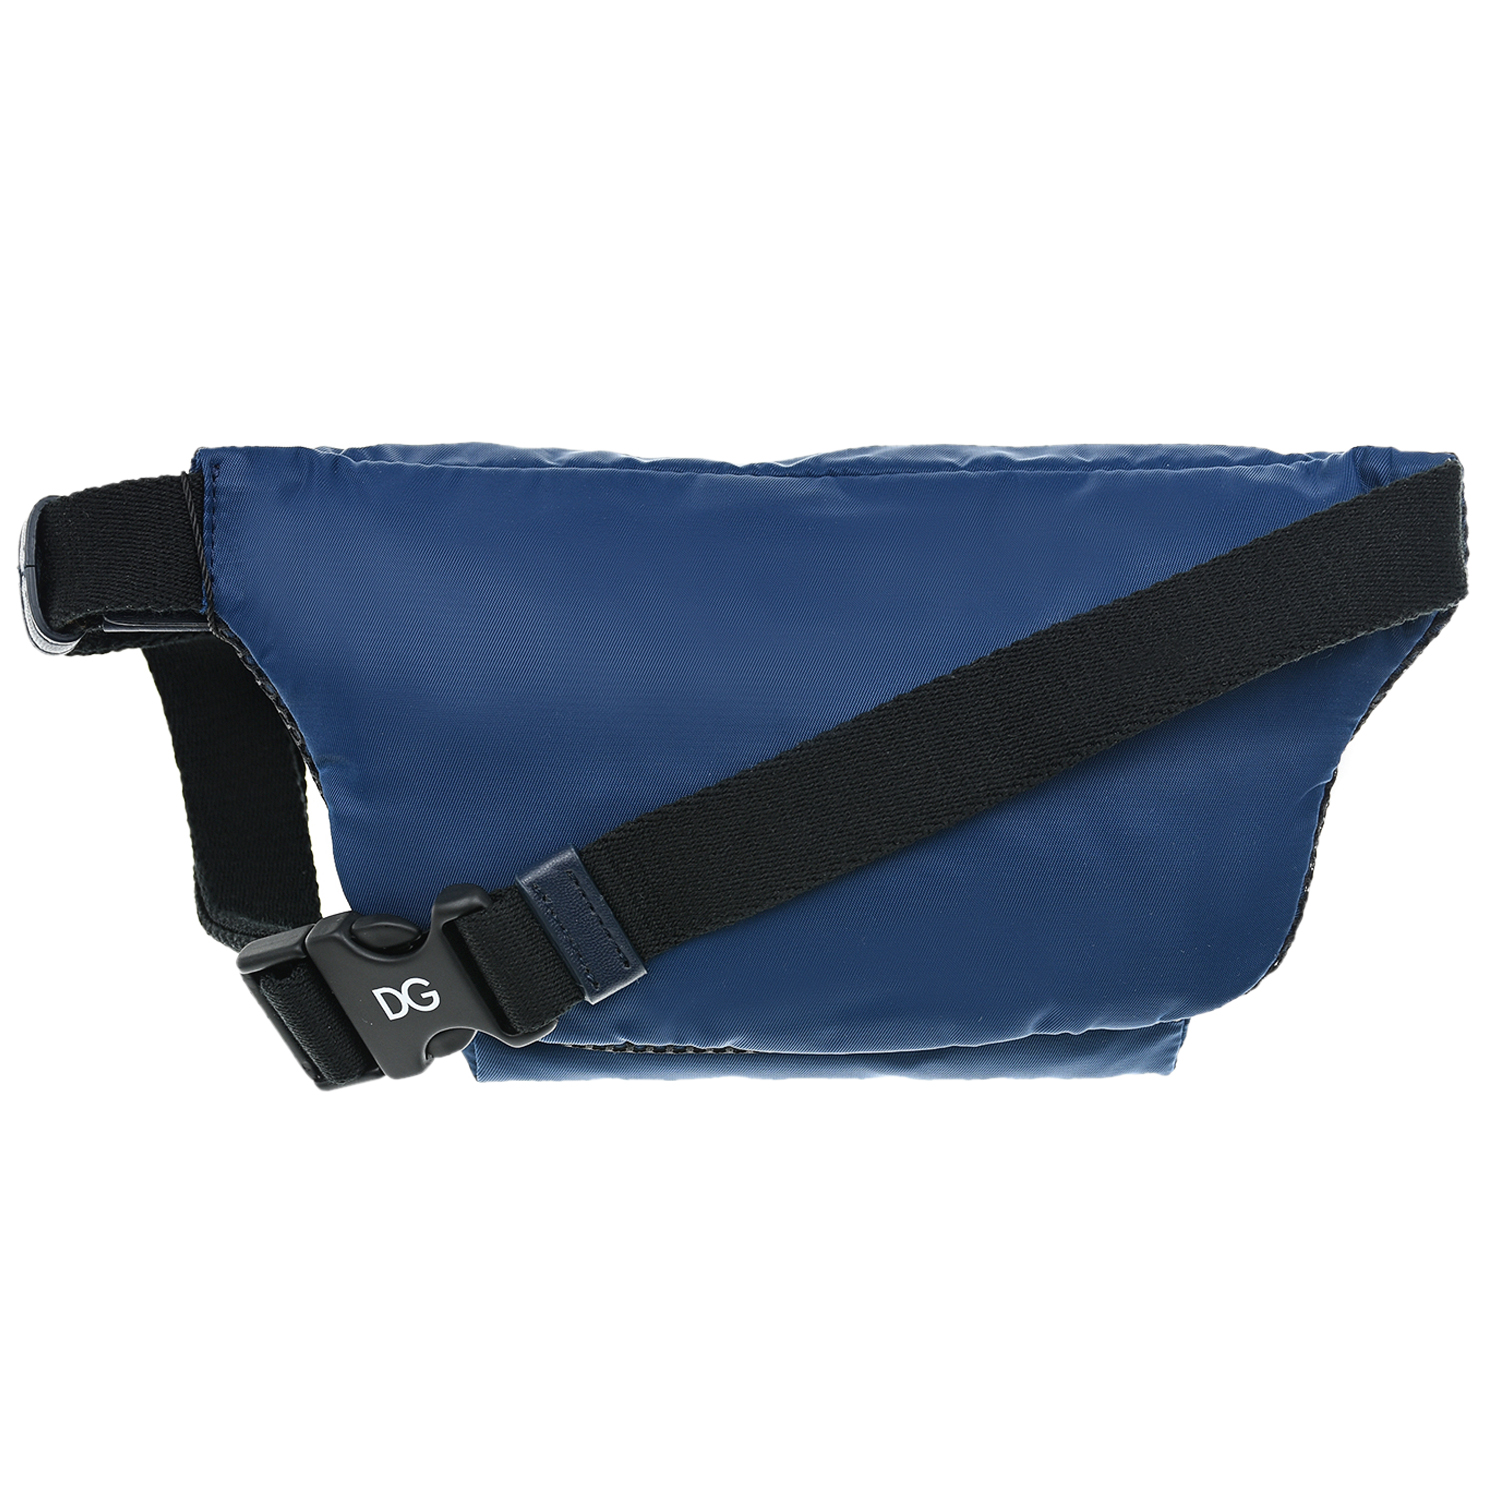 Синяя сумка-пояс, 22x12x7 см Dolce&Gabbana детская, размер unica, цвет синий - фото 5